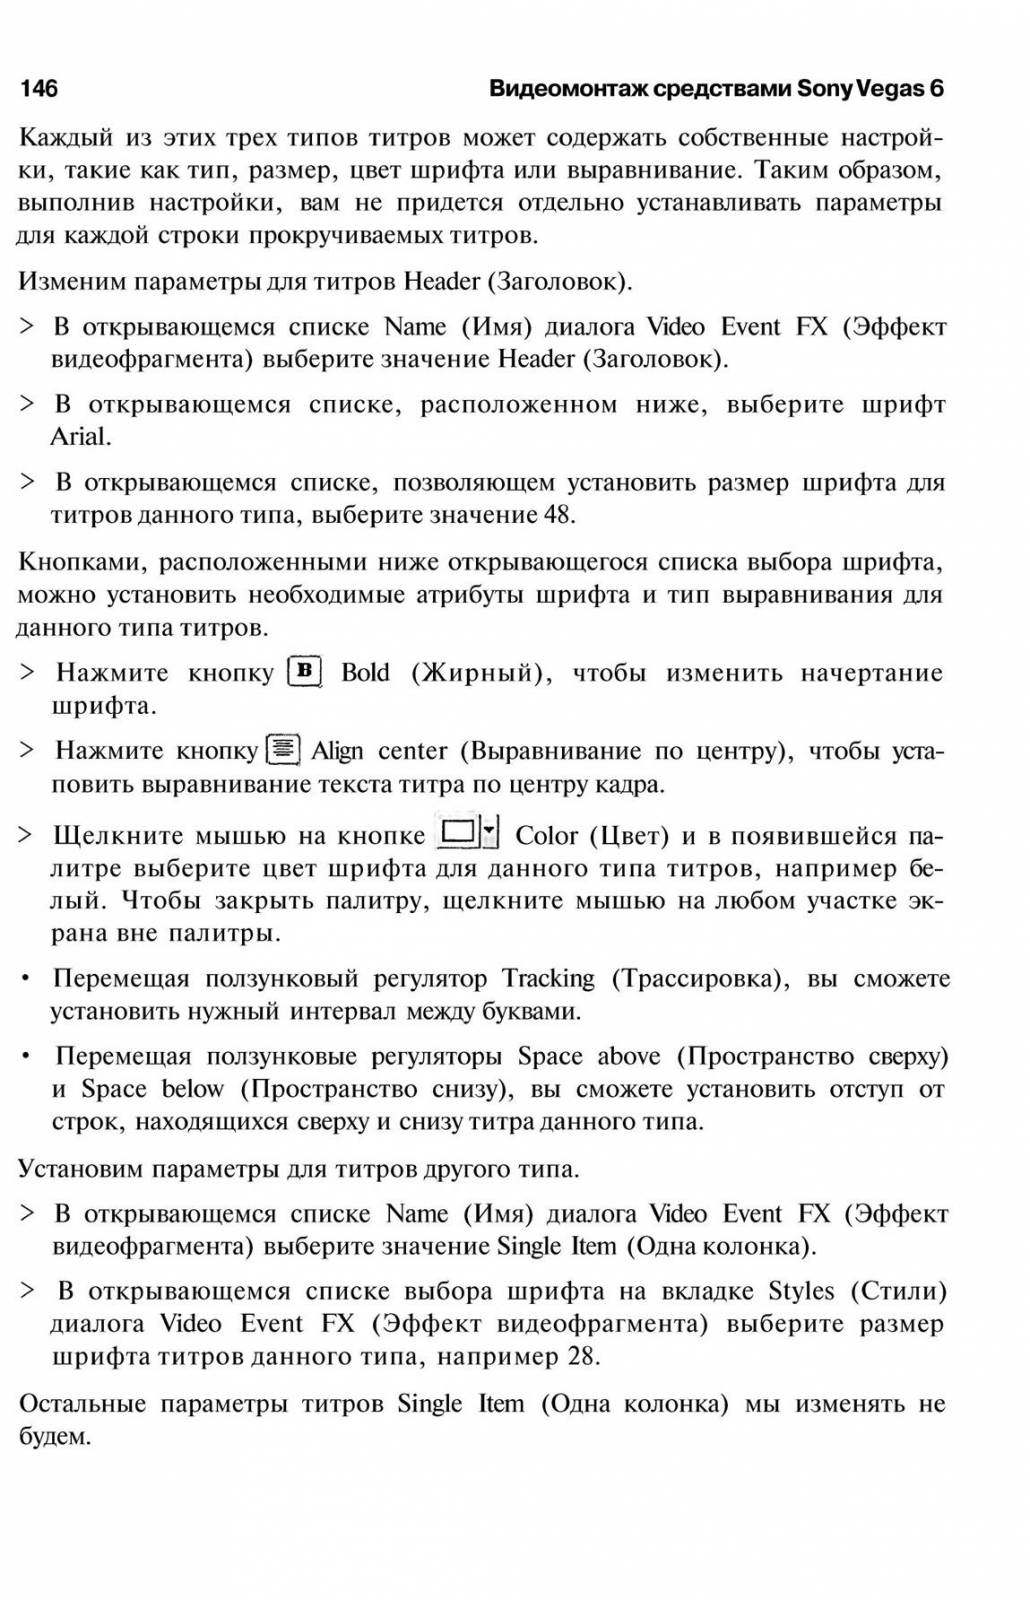 http://redaktori-uroki.3dn.ru/_ph/6/744115799.jpg